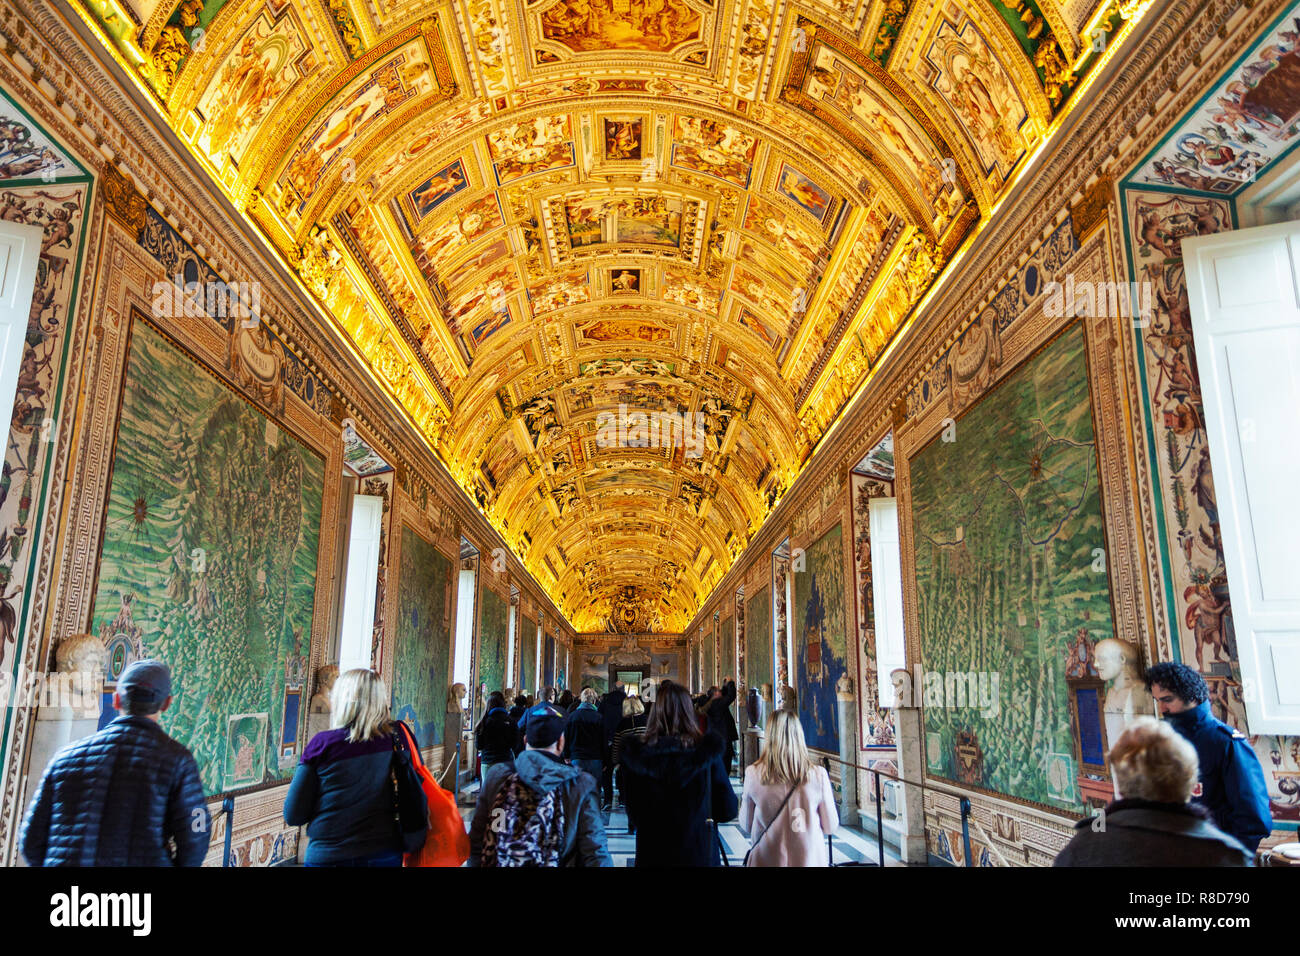 Pinturas para paredes y techos en la galería de mapas con turistas deambulando en el Museo Vaticano, IVA Foto de stock